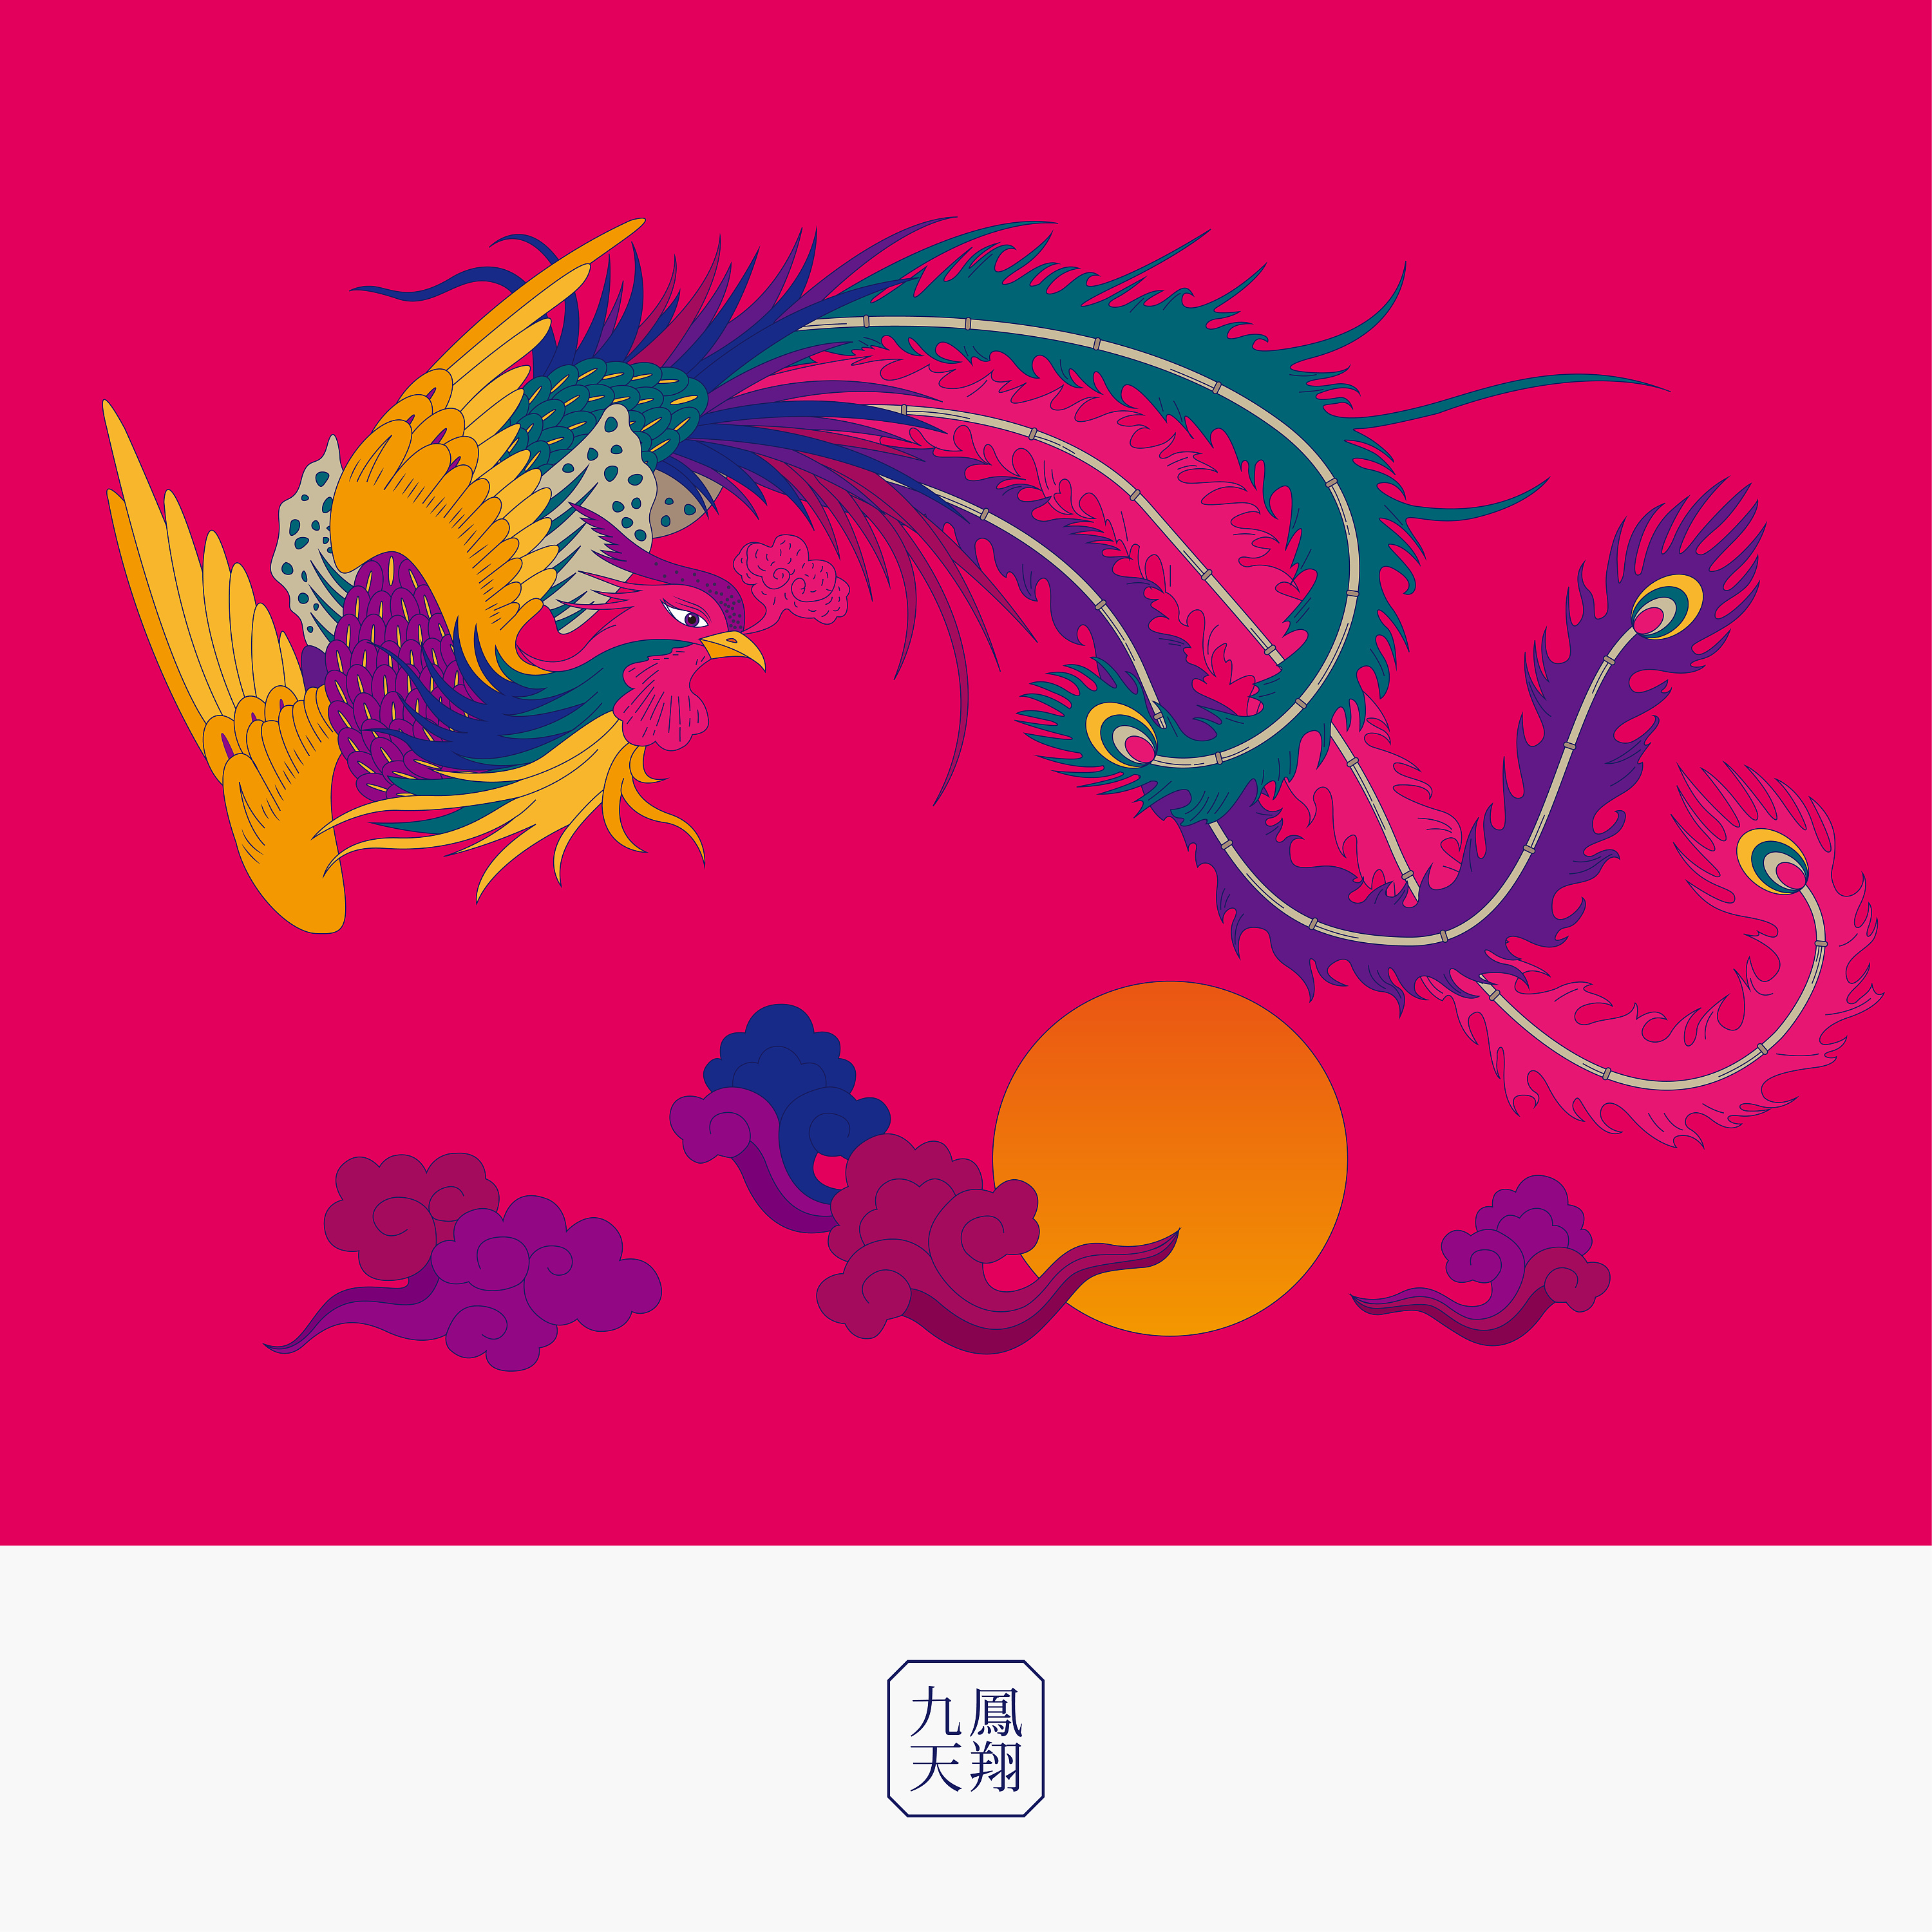 中国传统吉祥图案系列创作/chinese design